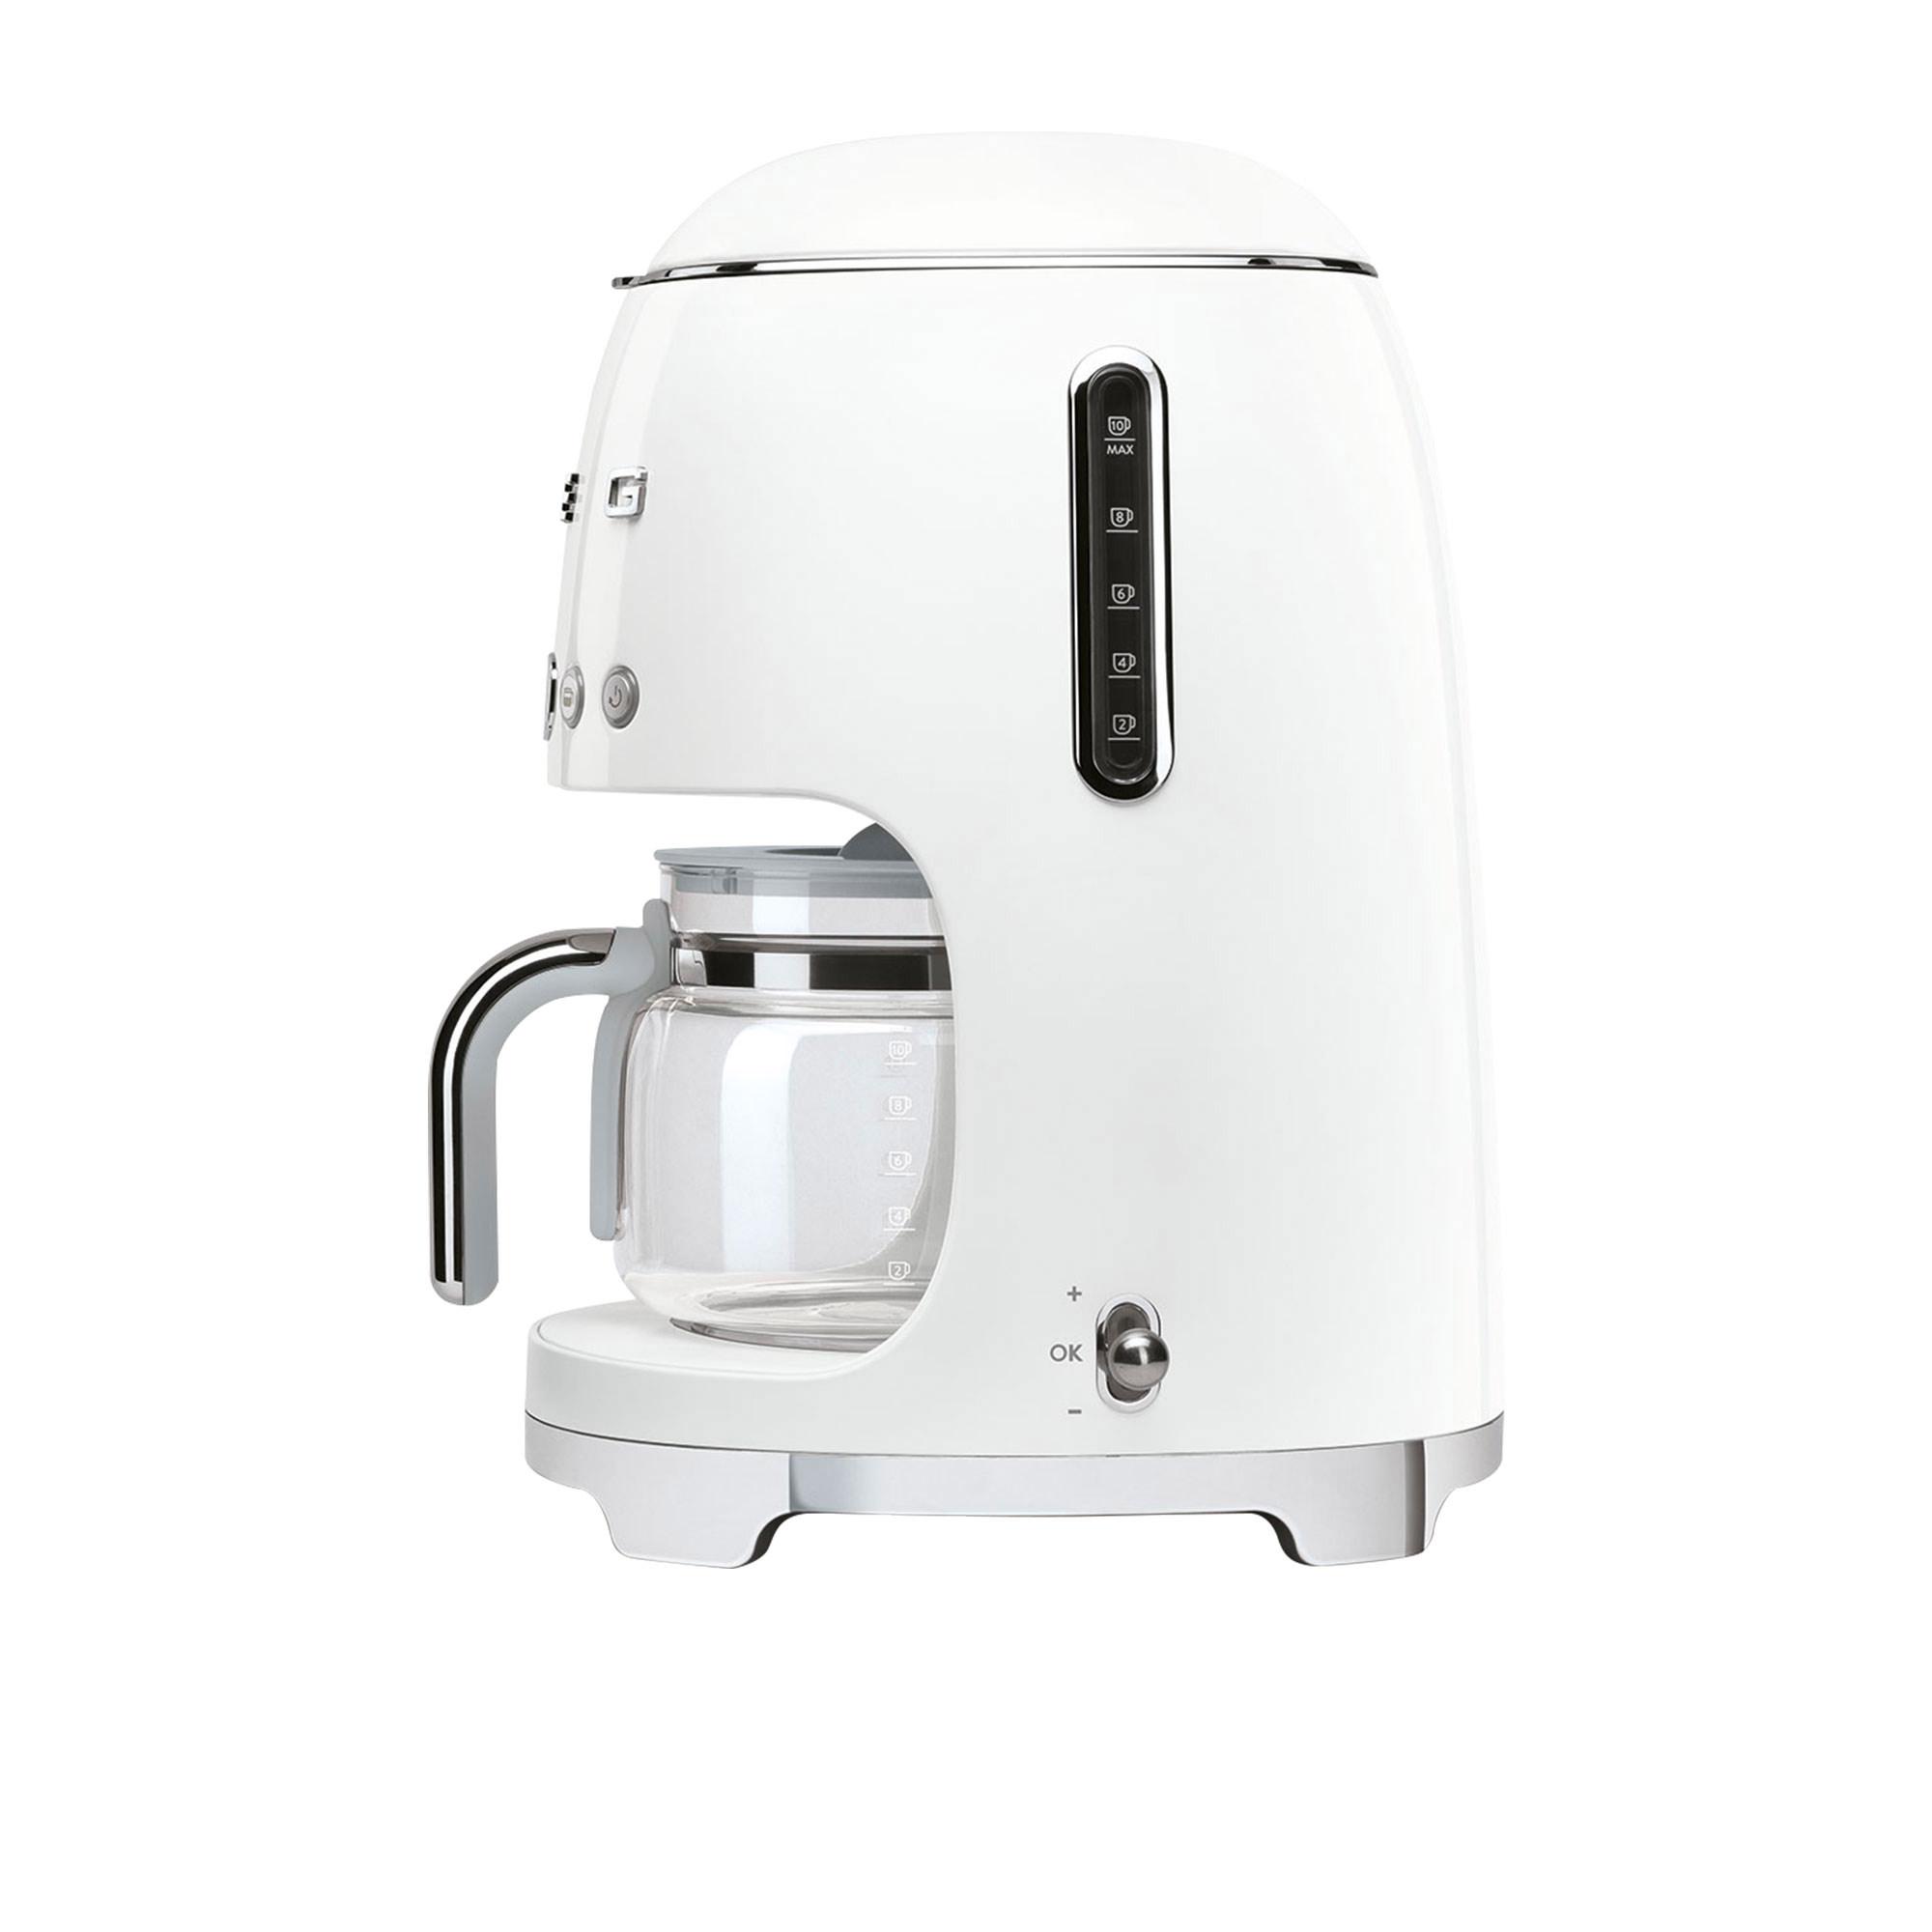 Smeg 50's Retro Style Drip Filter Coffee Machine White Image 3